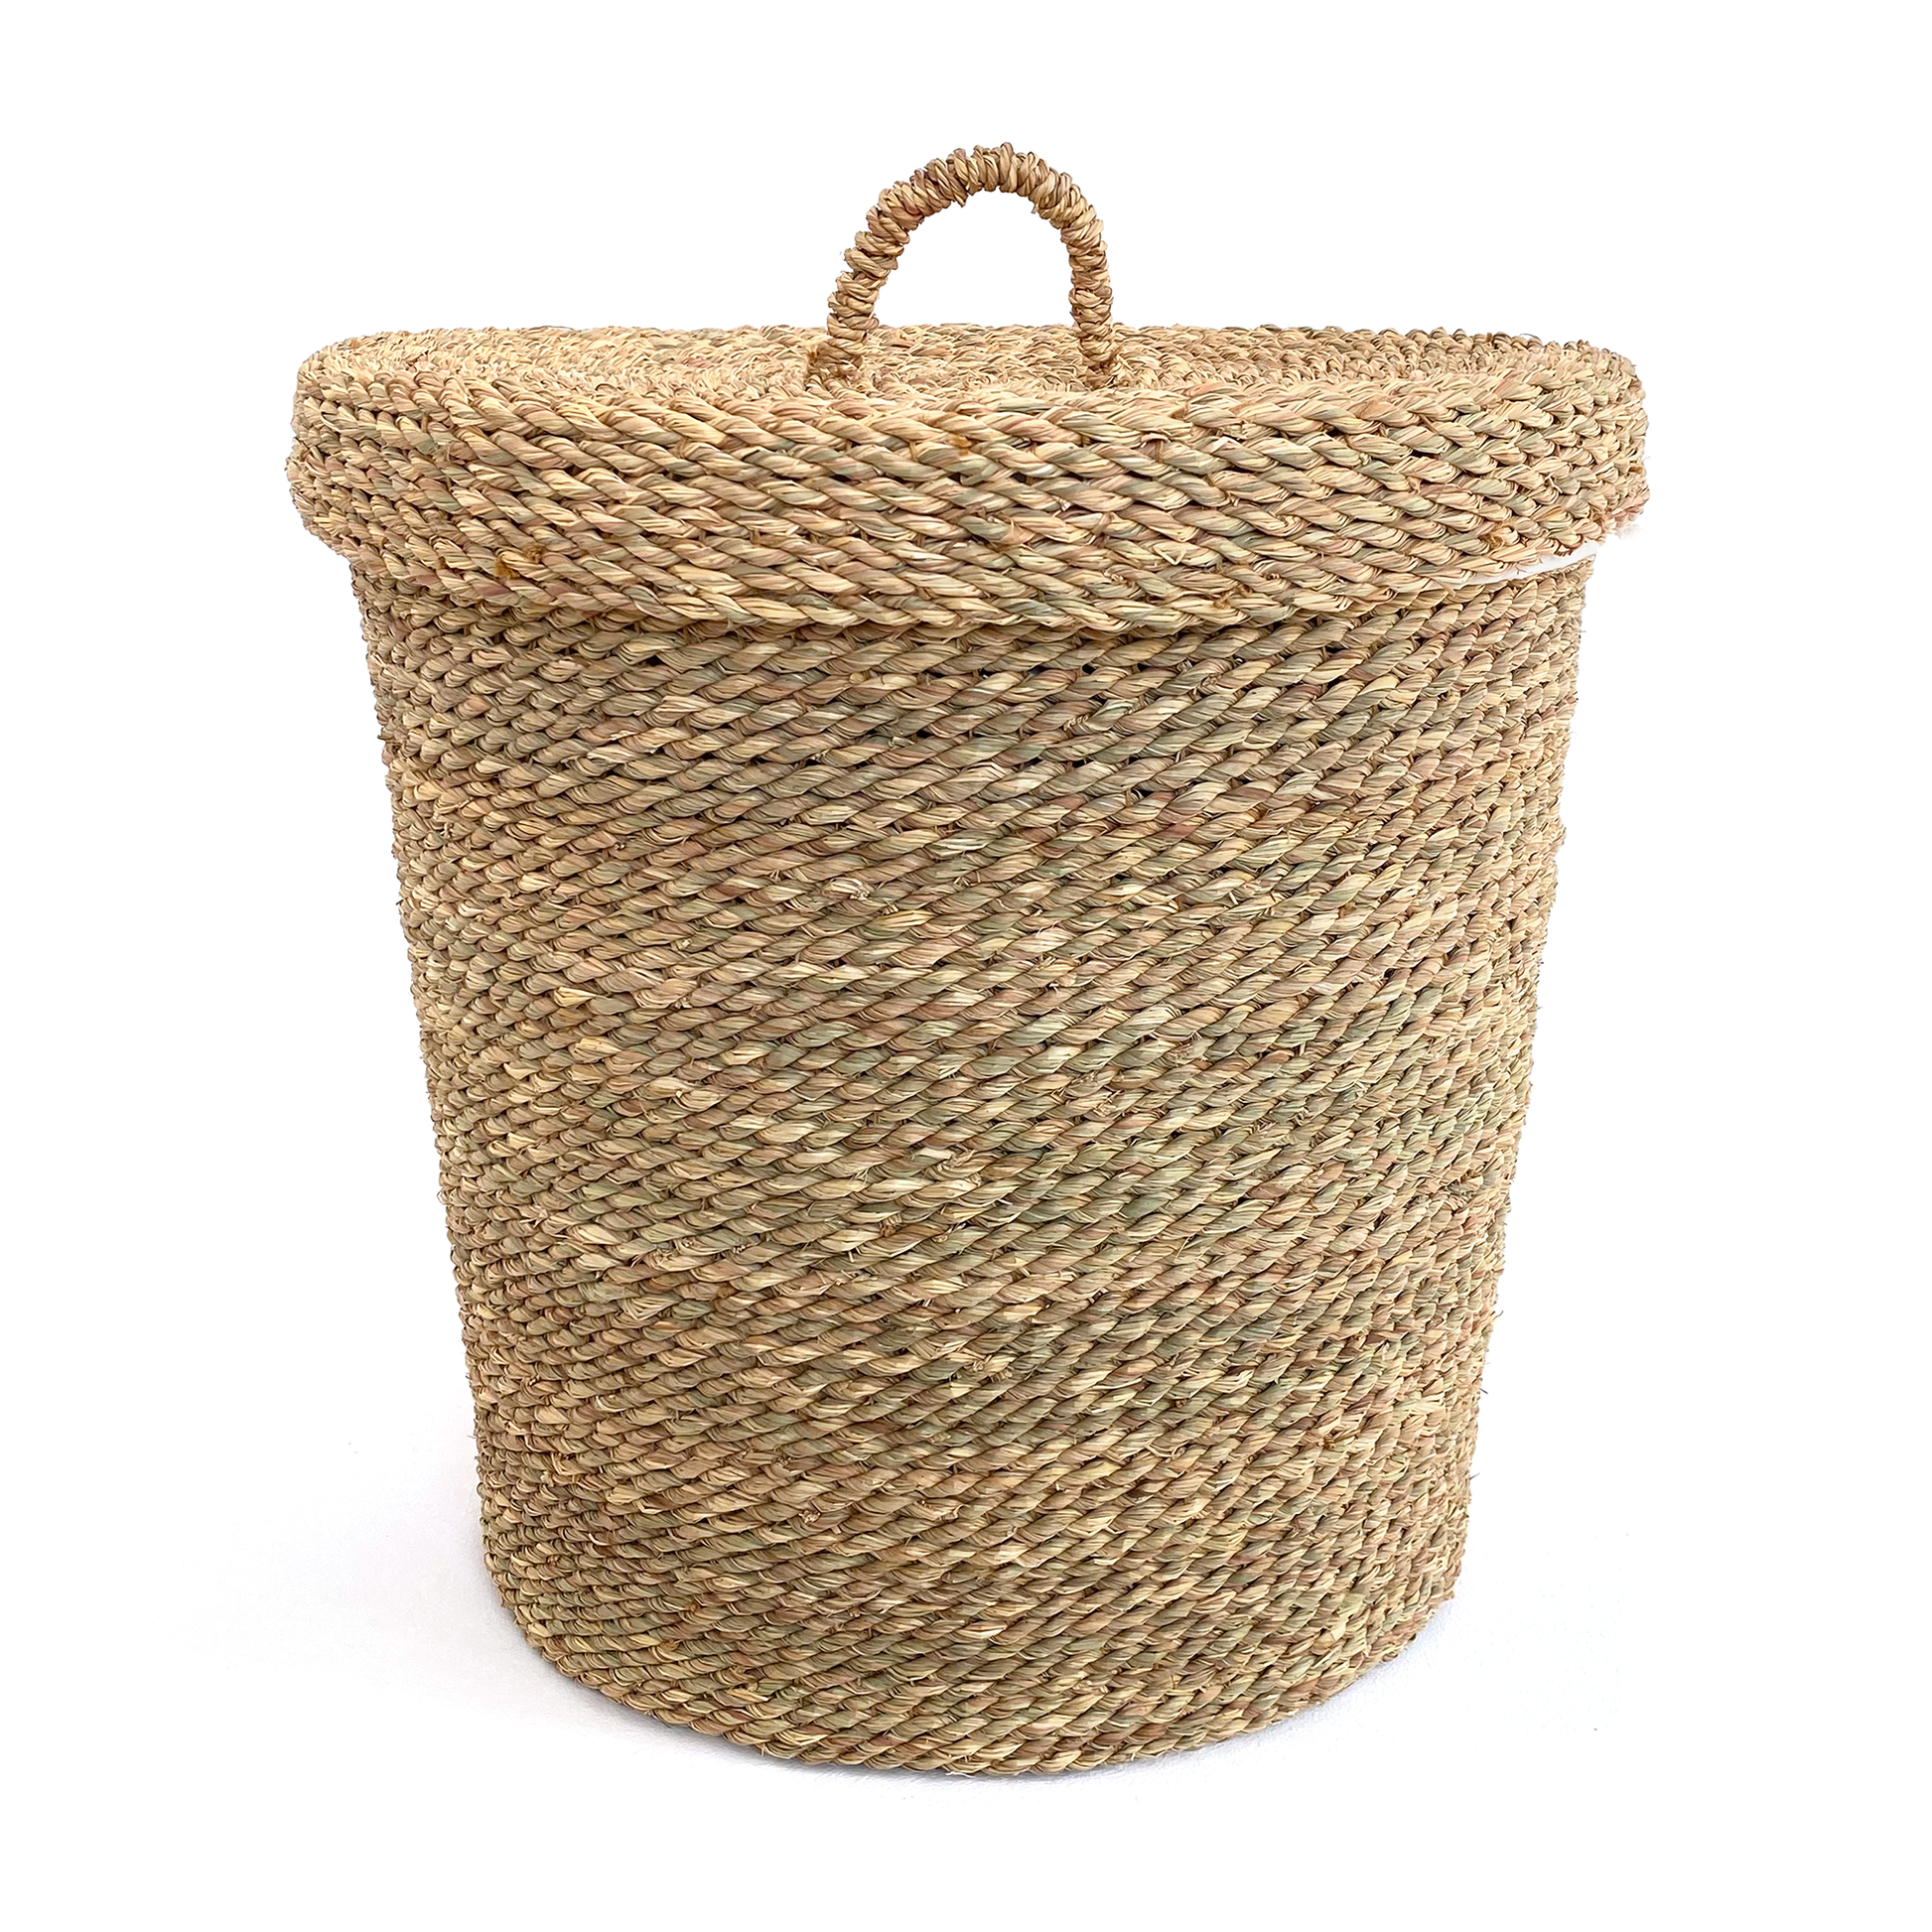 Halfa laundry basket with lid. سلة حلفا للغسيل بغطاء